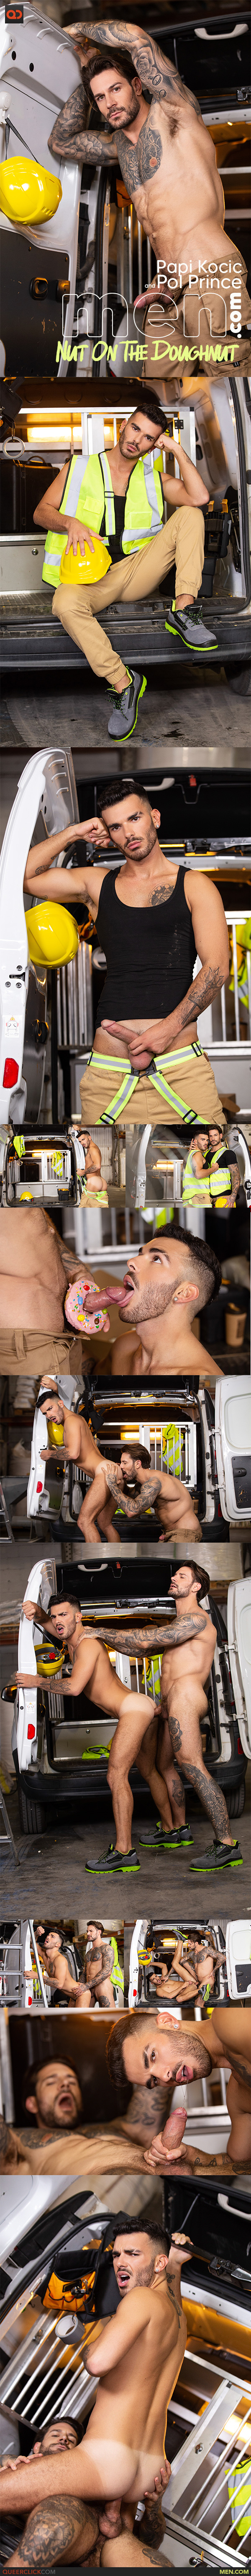 Men.com: Papi Kocic and Pol Prince - Nut On The Doughnut